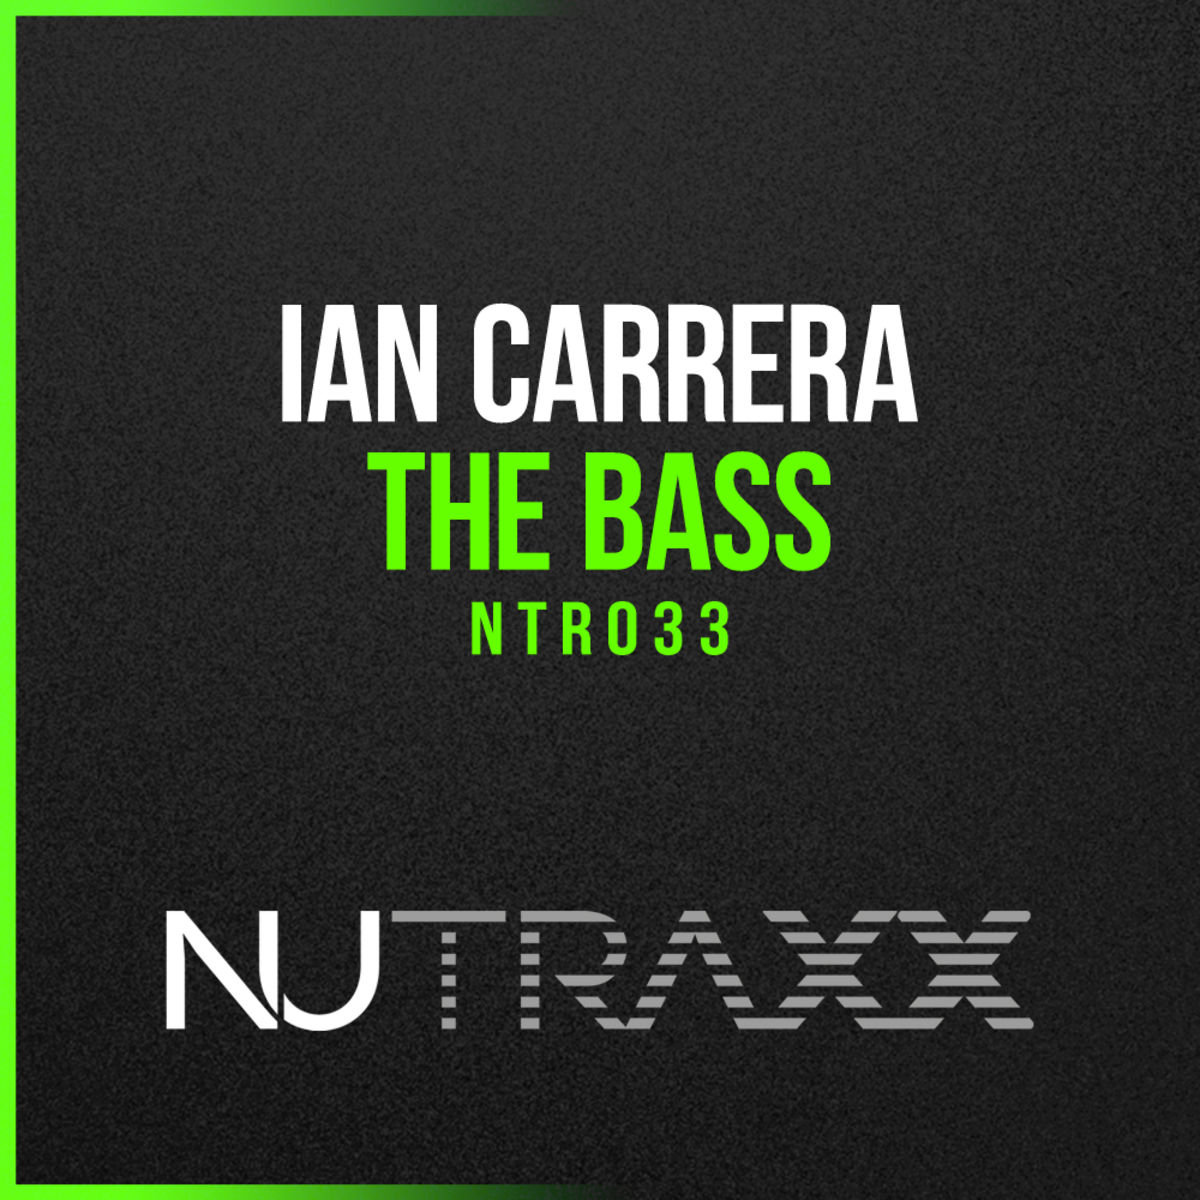 Ian Carrera - The Bass (Funk Rockstar Mix) / NU TRAXX Records